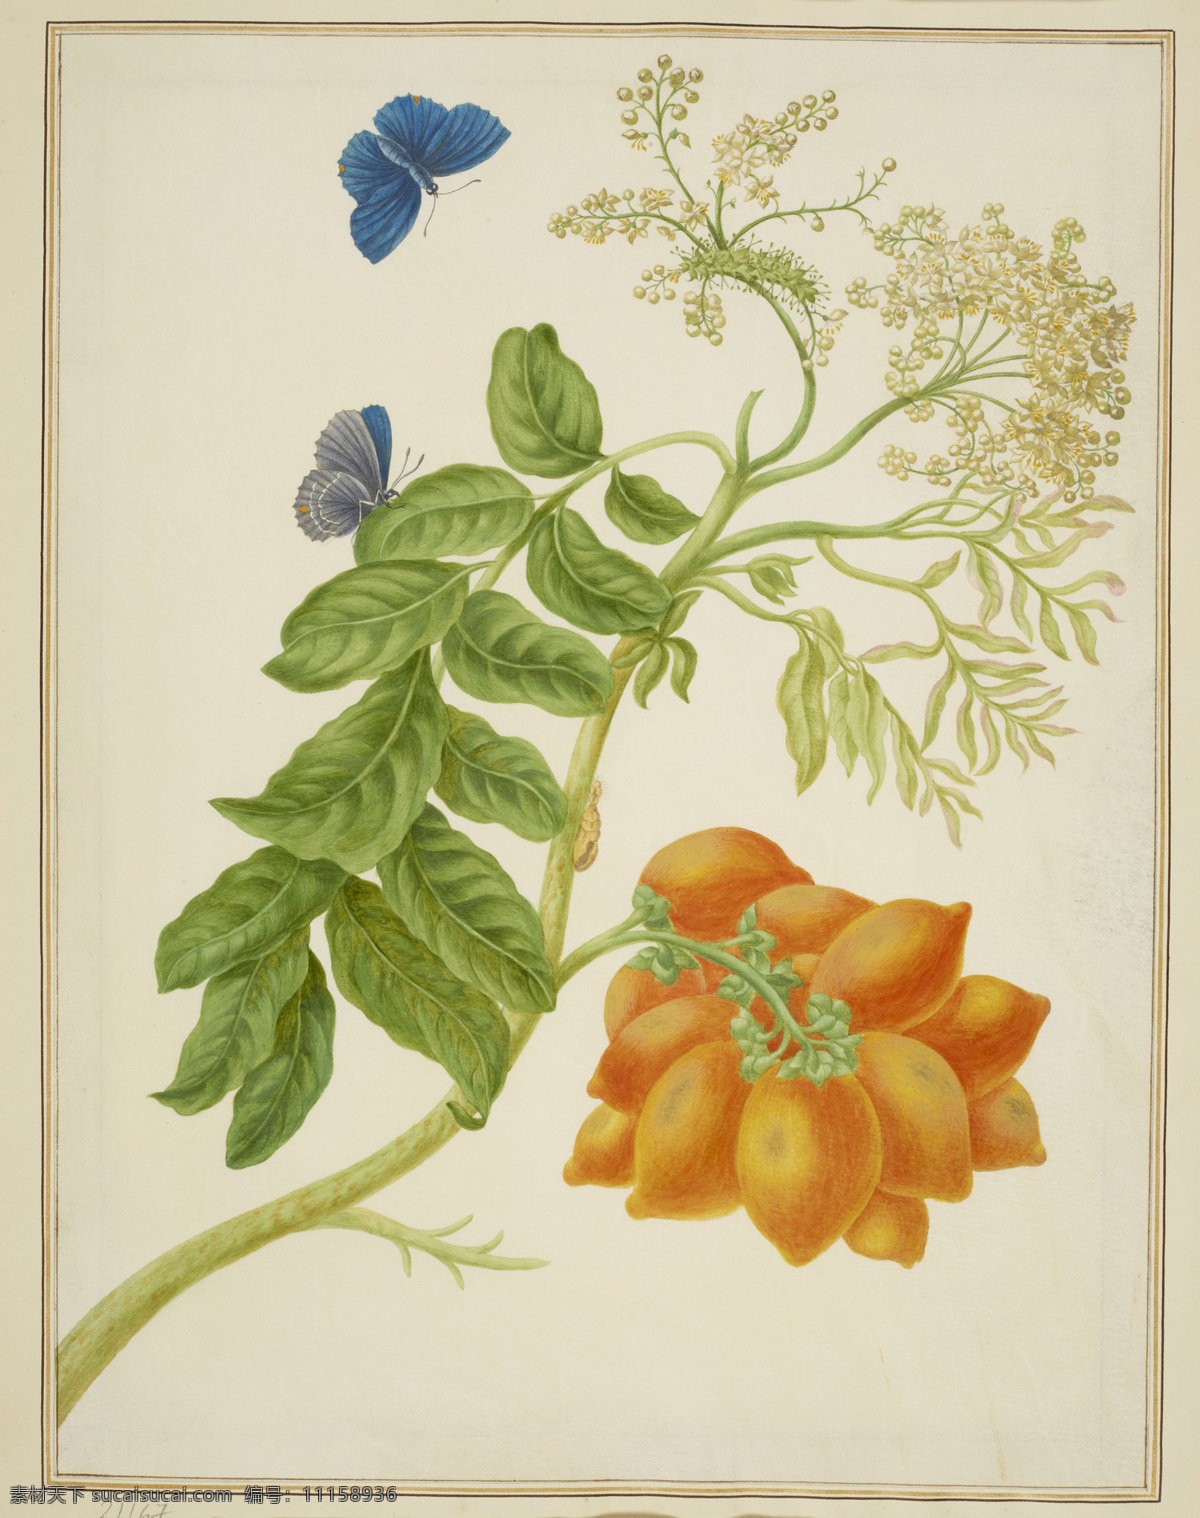 玛丽 娅 西比 拉 梅里安 作品 德国女画家 黄槟榔青 生长于 澳大利亚 蓝蝴蝶 世纪 水彩画 文化艺术 绘画书法